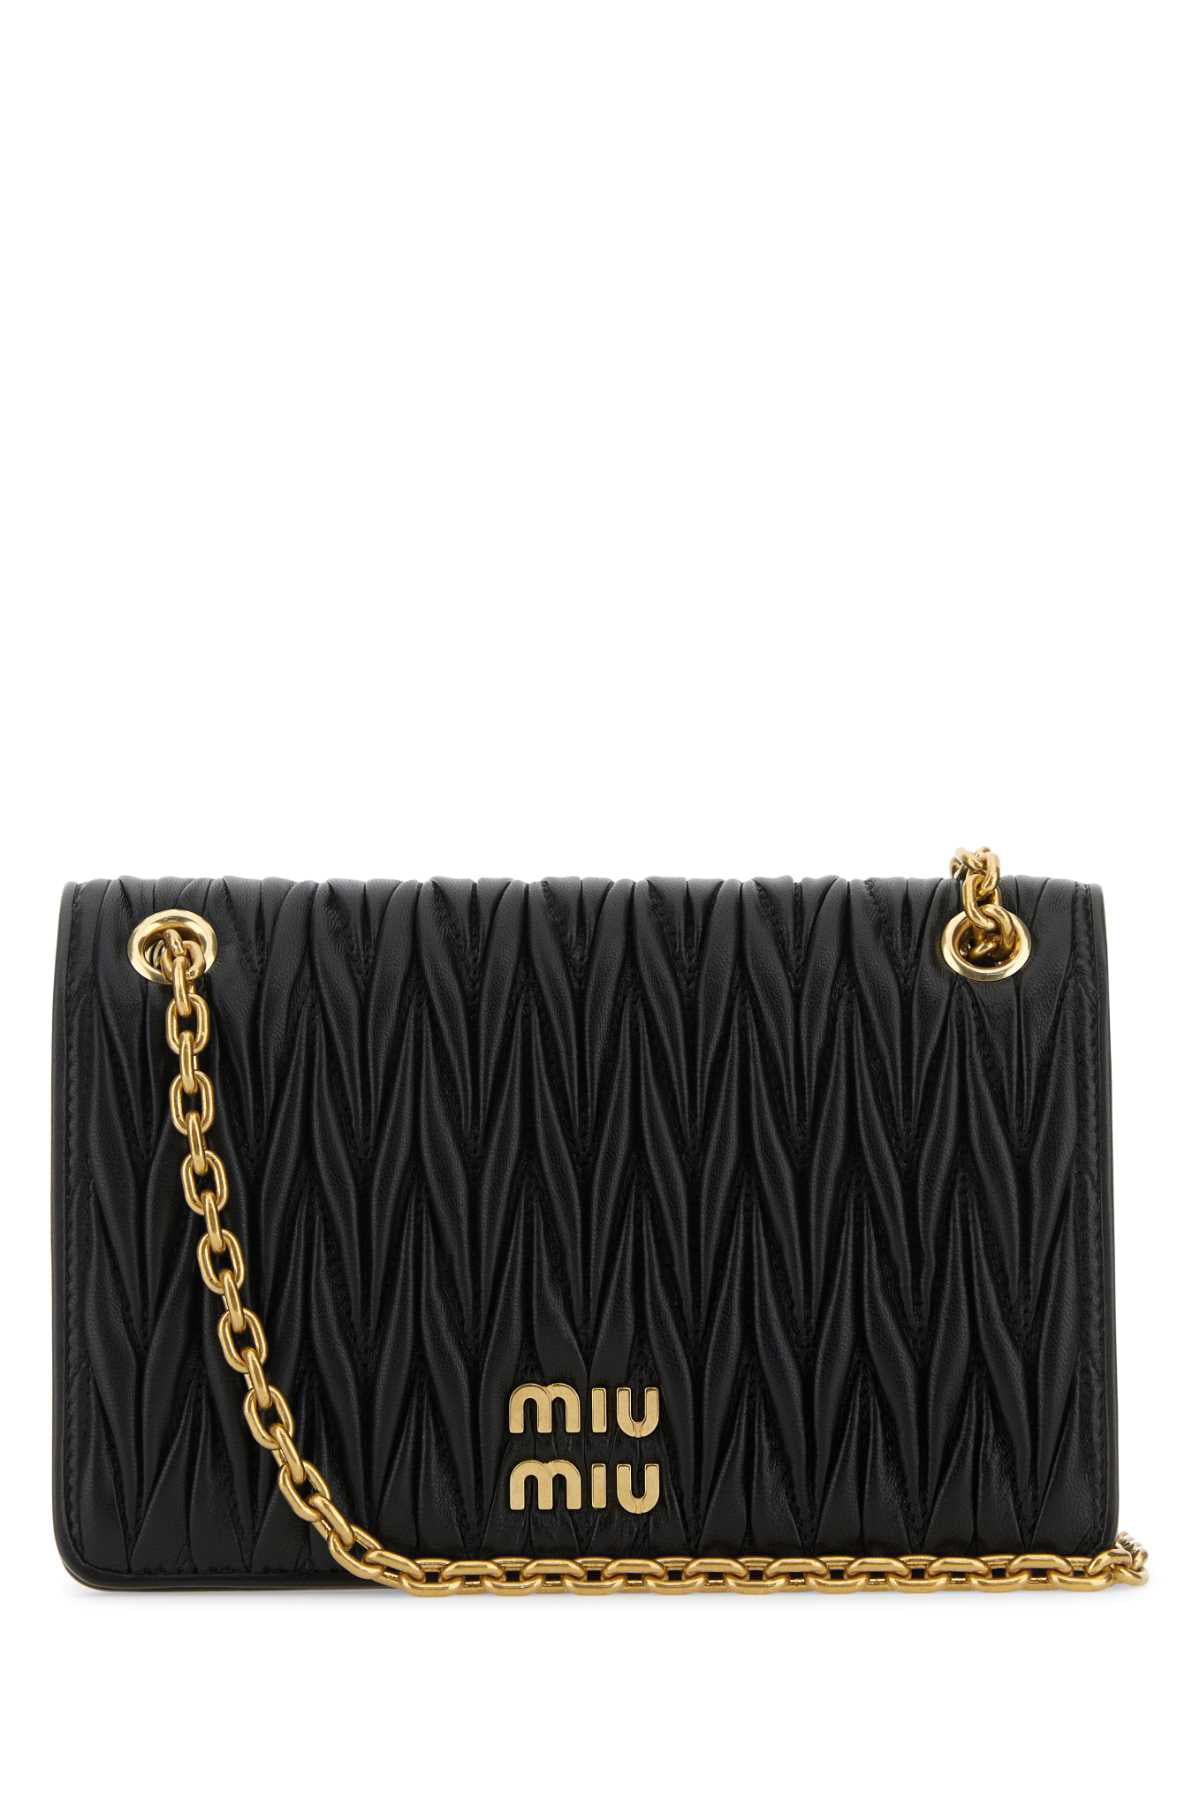 Leather handbag Miu Miu Black in Leather - 36903654